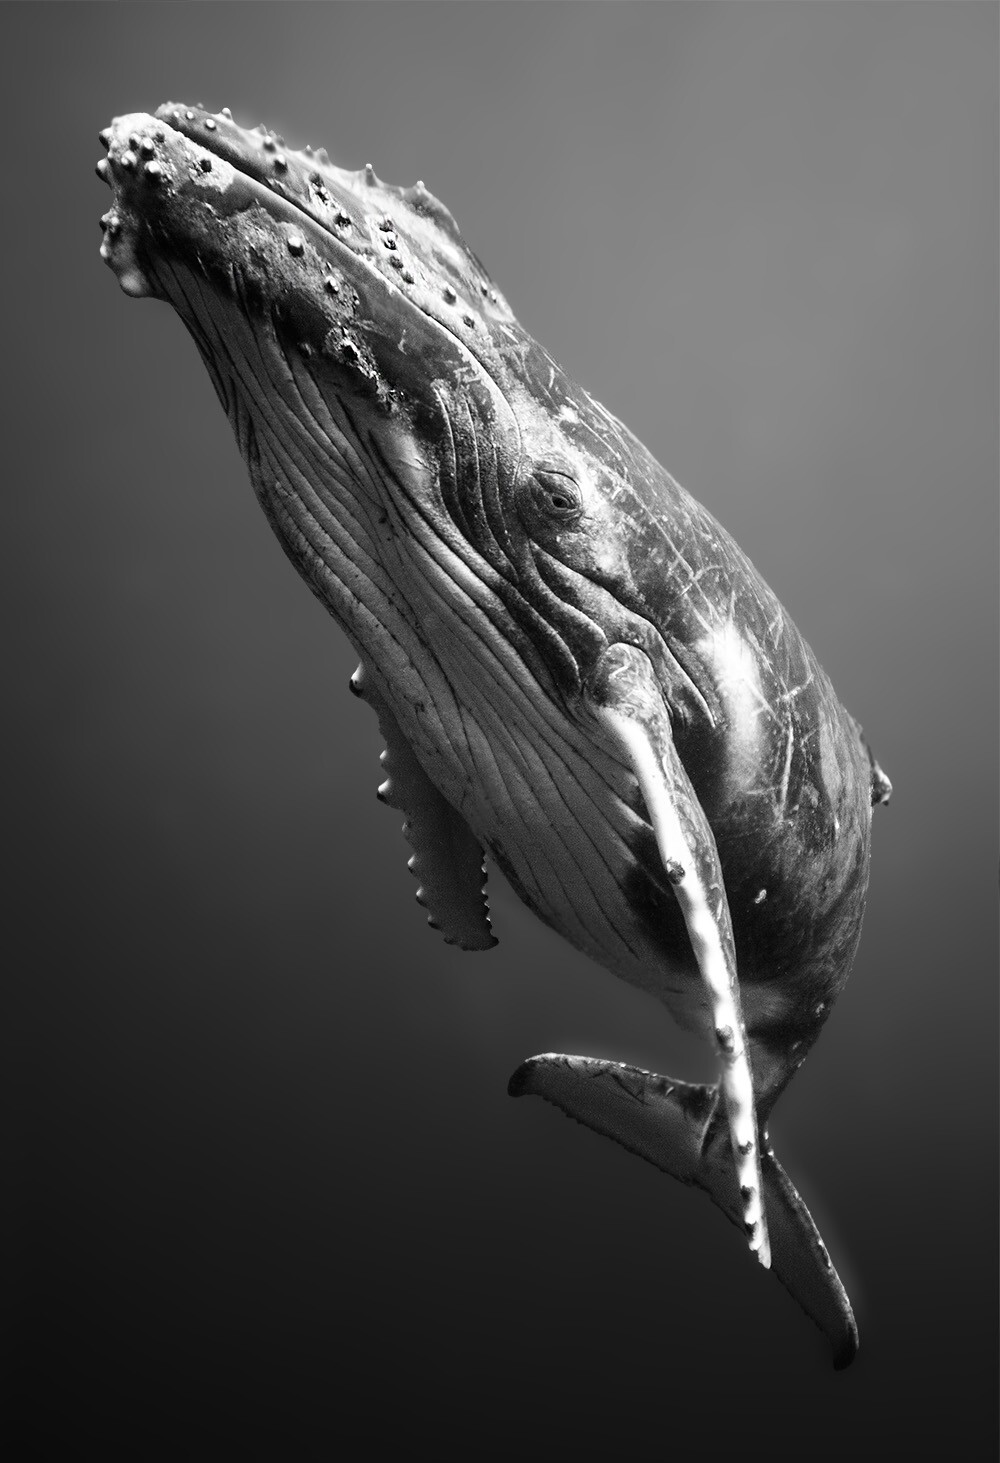 7. "Взгляд кита", Вэнь Хуа Чэнь